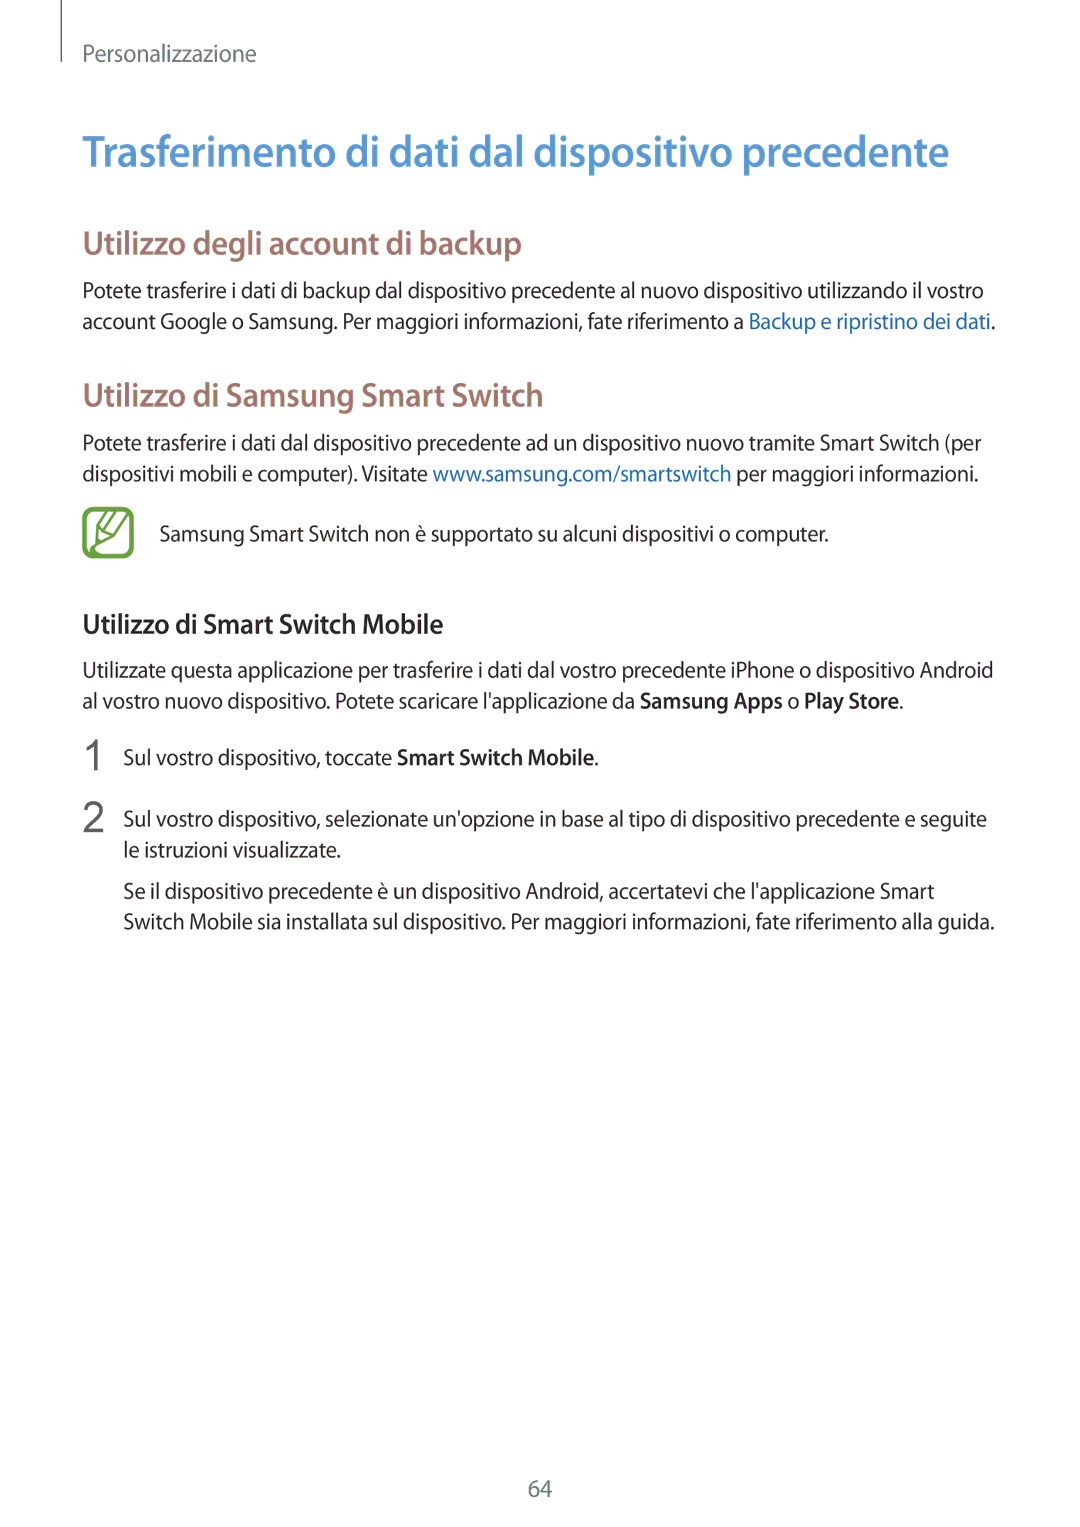 Samsung SM-T805NTSAOMN Utilizzo degli account di backup, Utilizzo di Samsung Smart Switch, Utilizzo di Smart Switch Mobile 